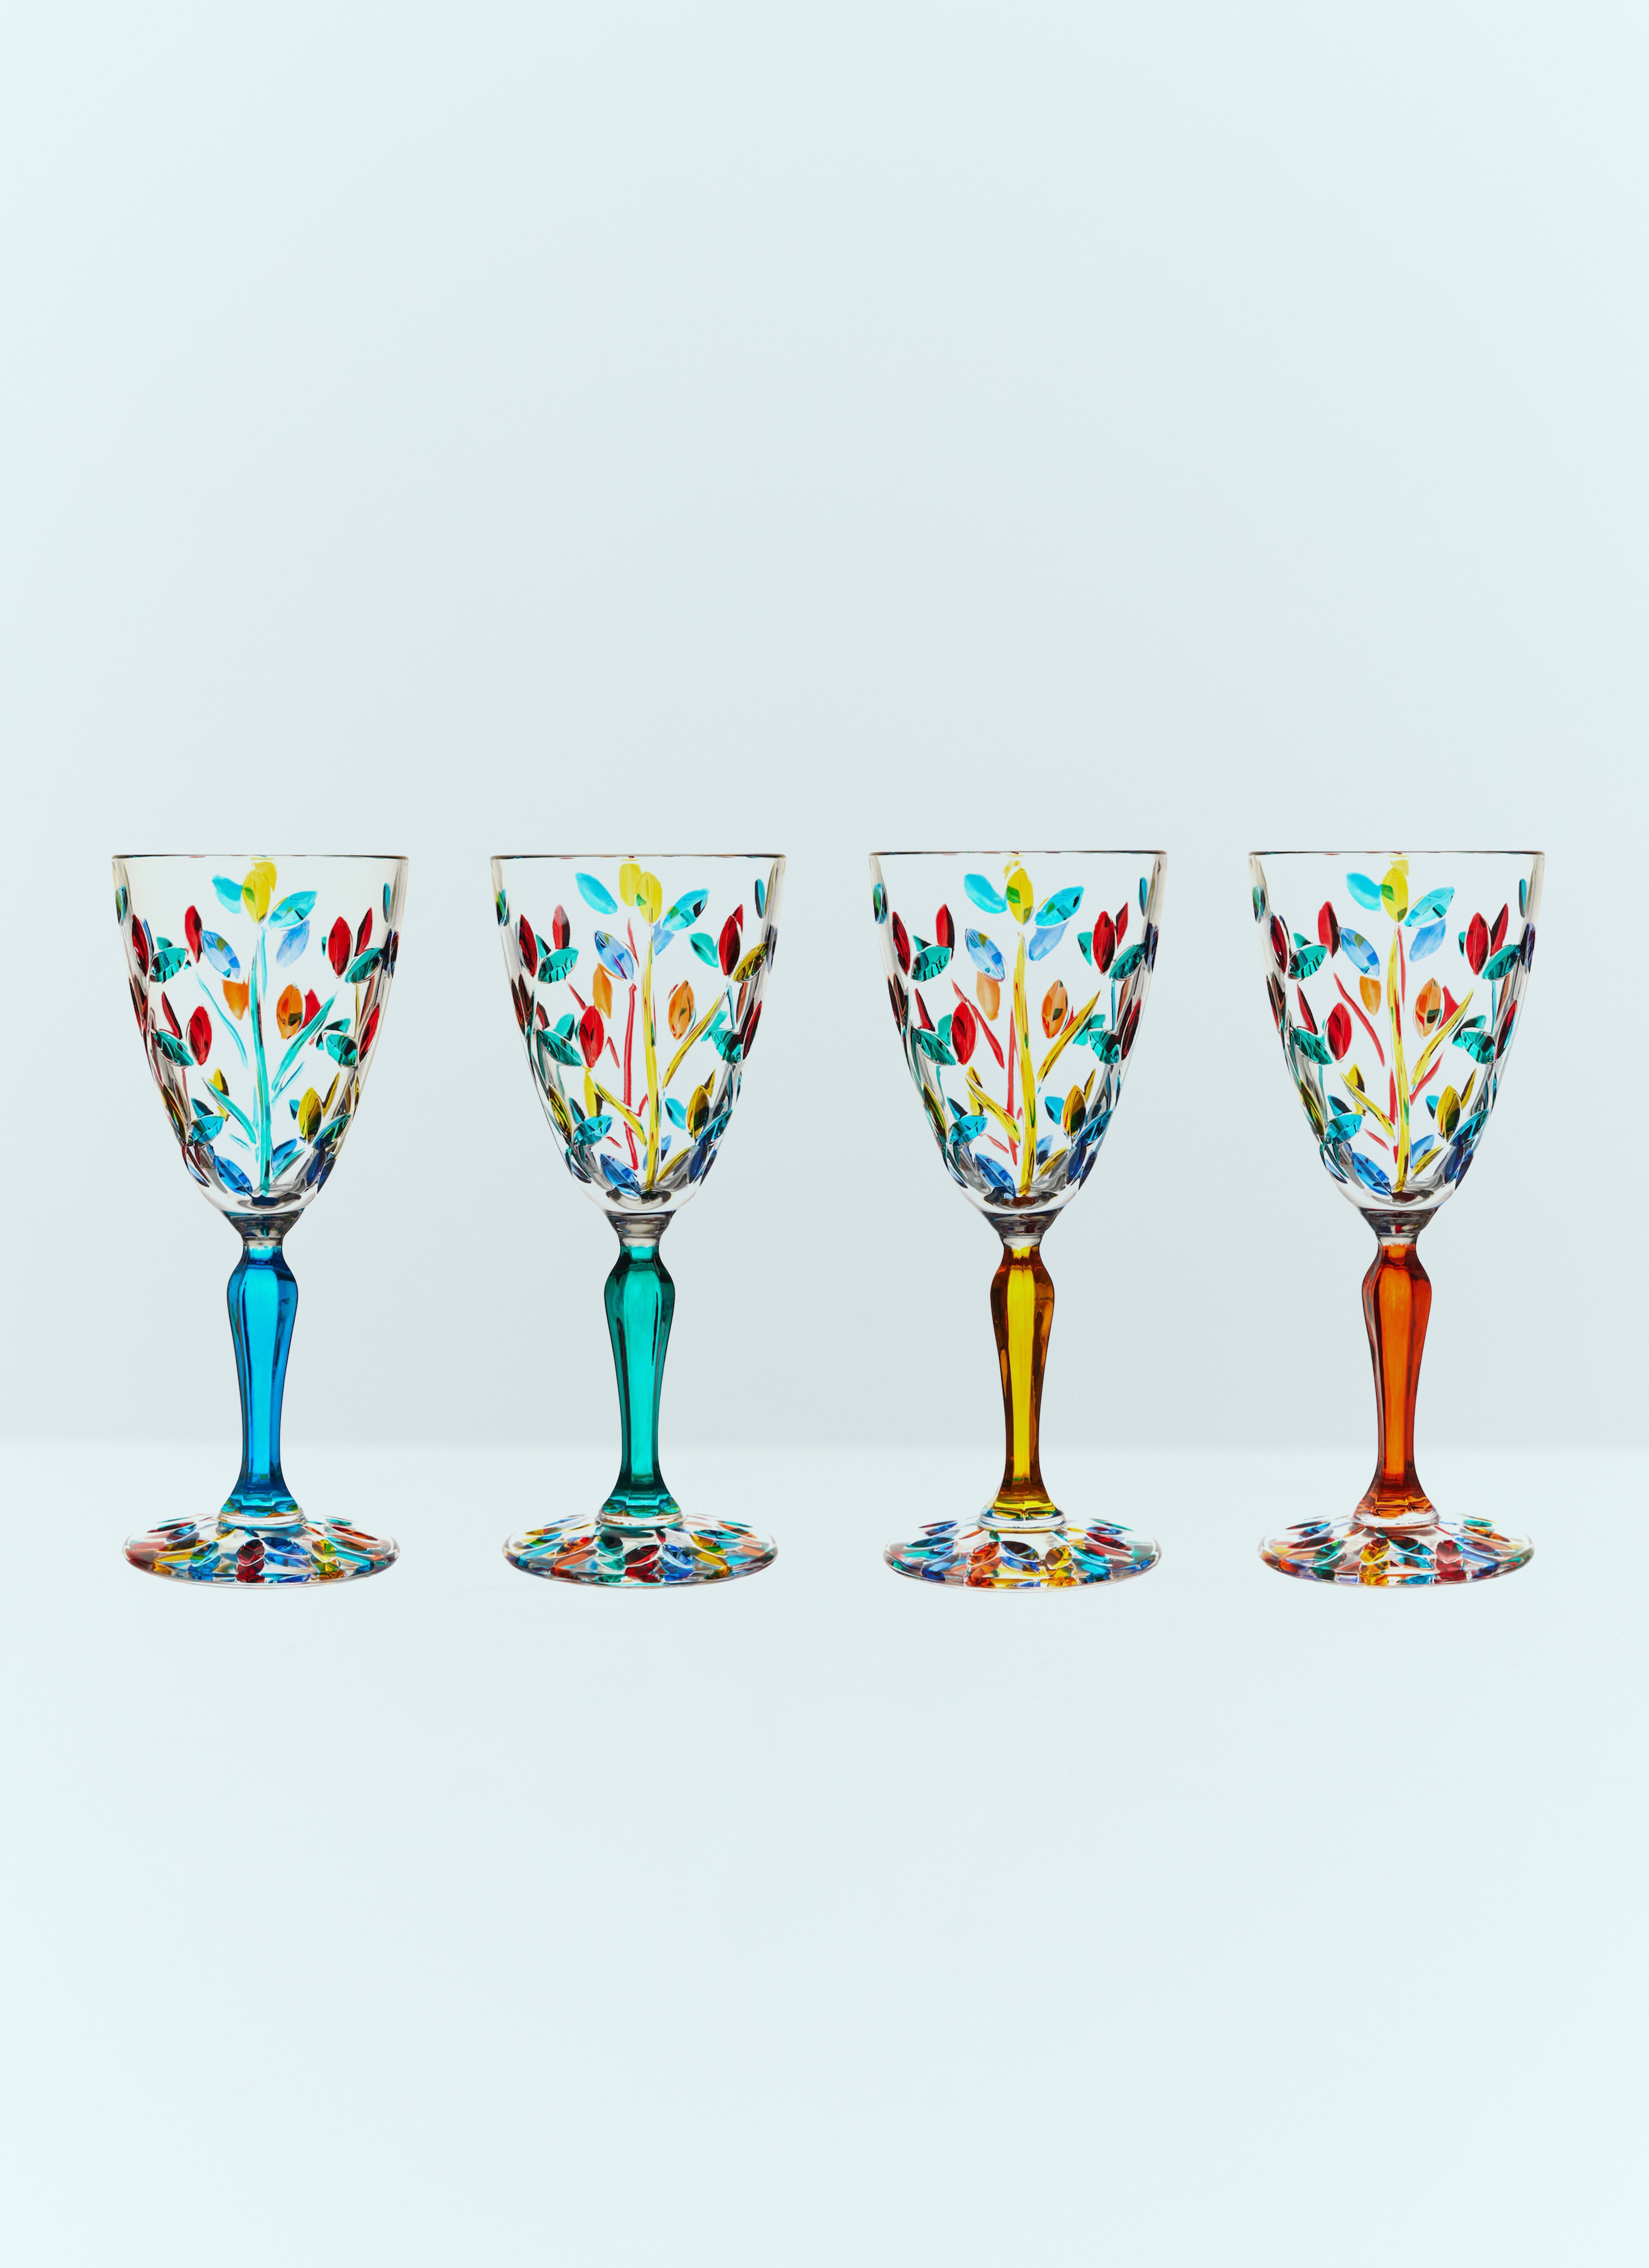 Polspotten Set Of Four Floral Floral Glasses Multicolour wps0691145